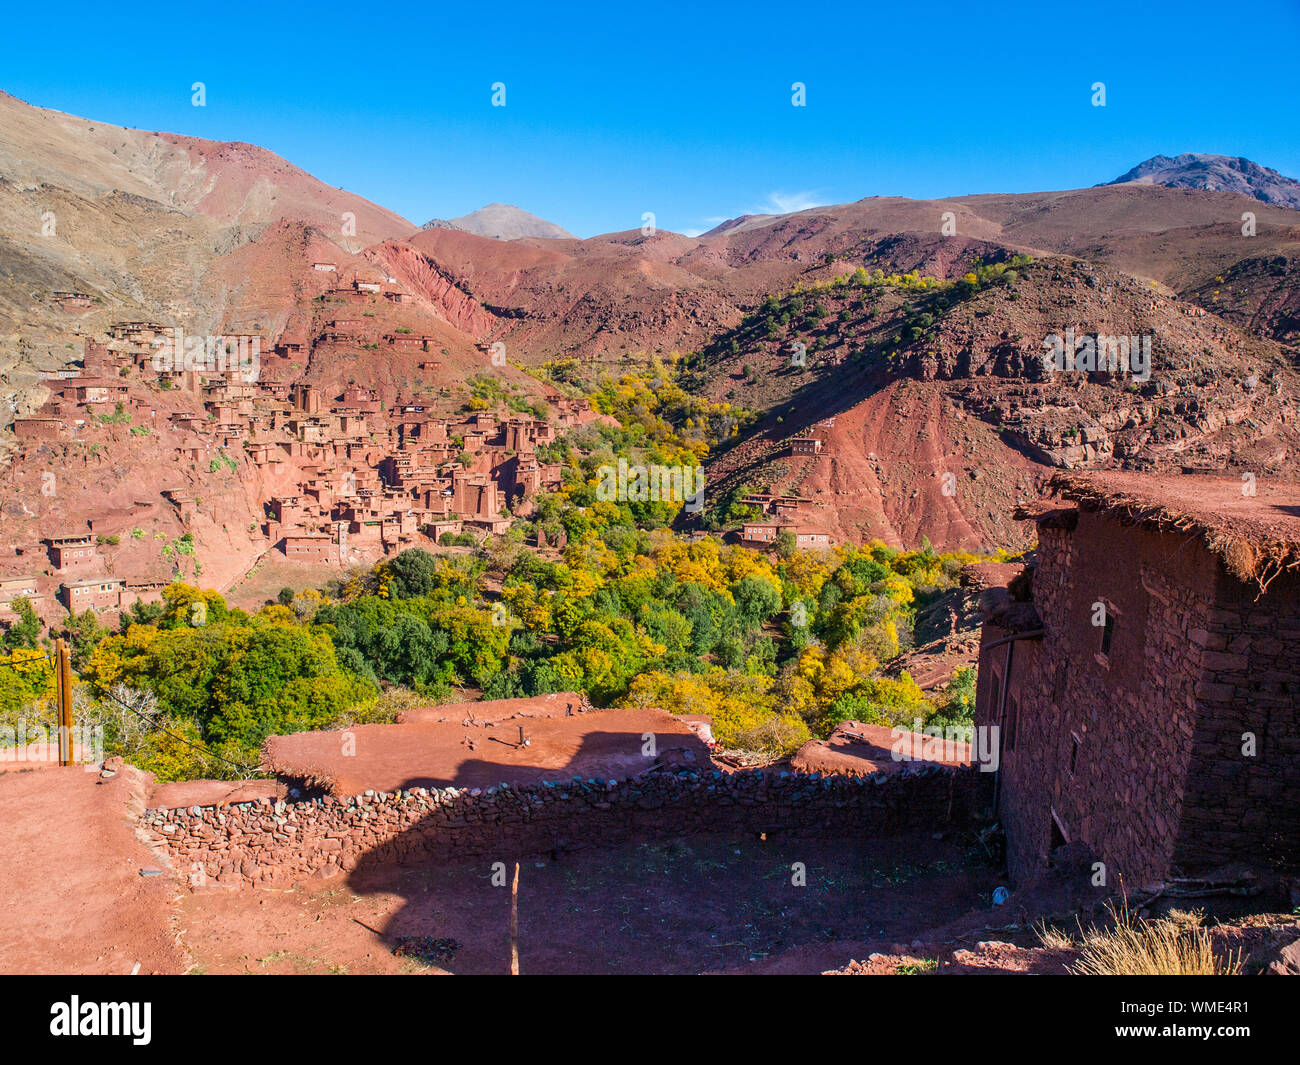 Megdaz un pueblo bereber en el Alto Atlas de Marruecos Foto de stock